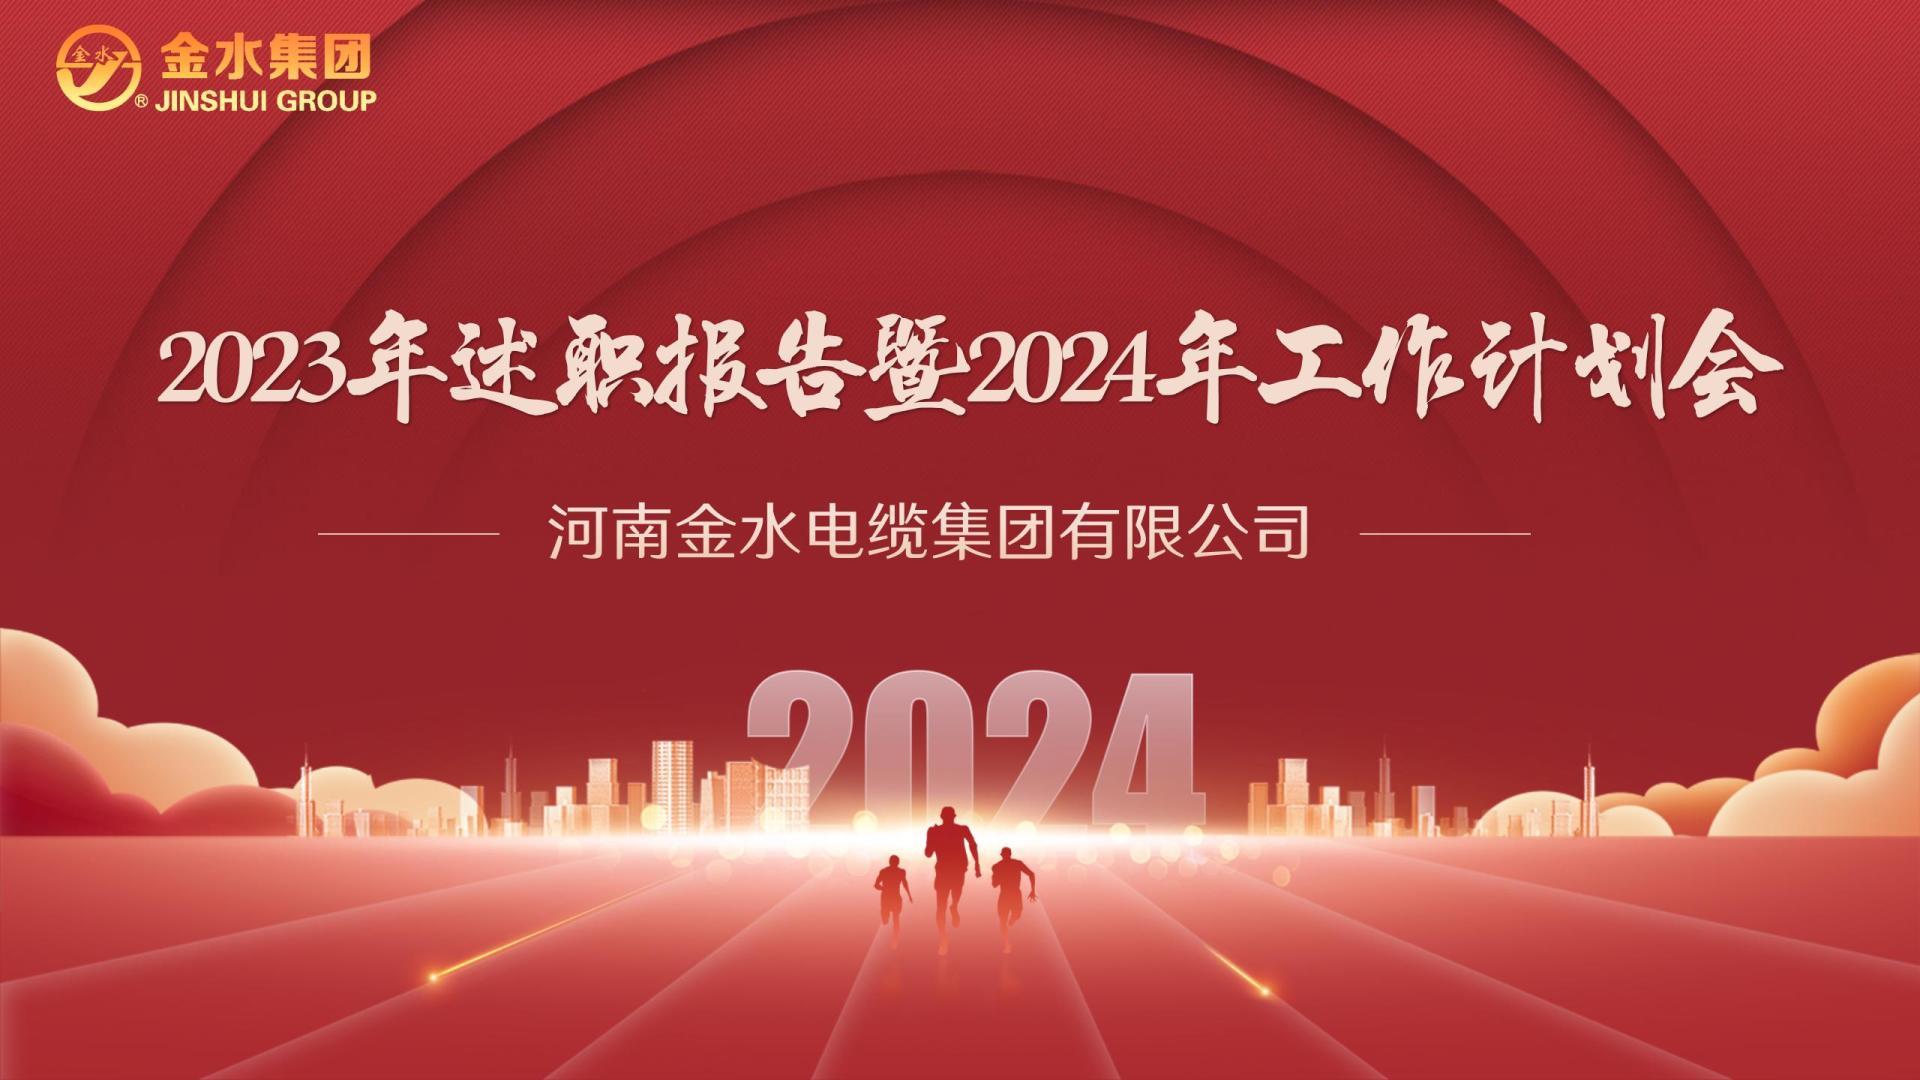 【金水动态】同心致远•向新而行----河南金水电缆集团2023年述职报告暨2024年工作计划会